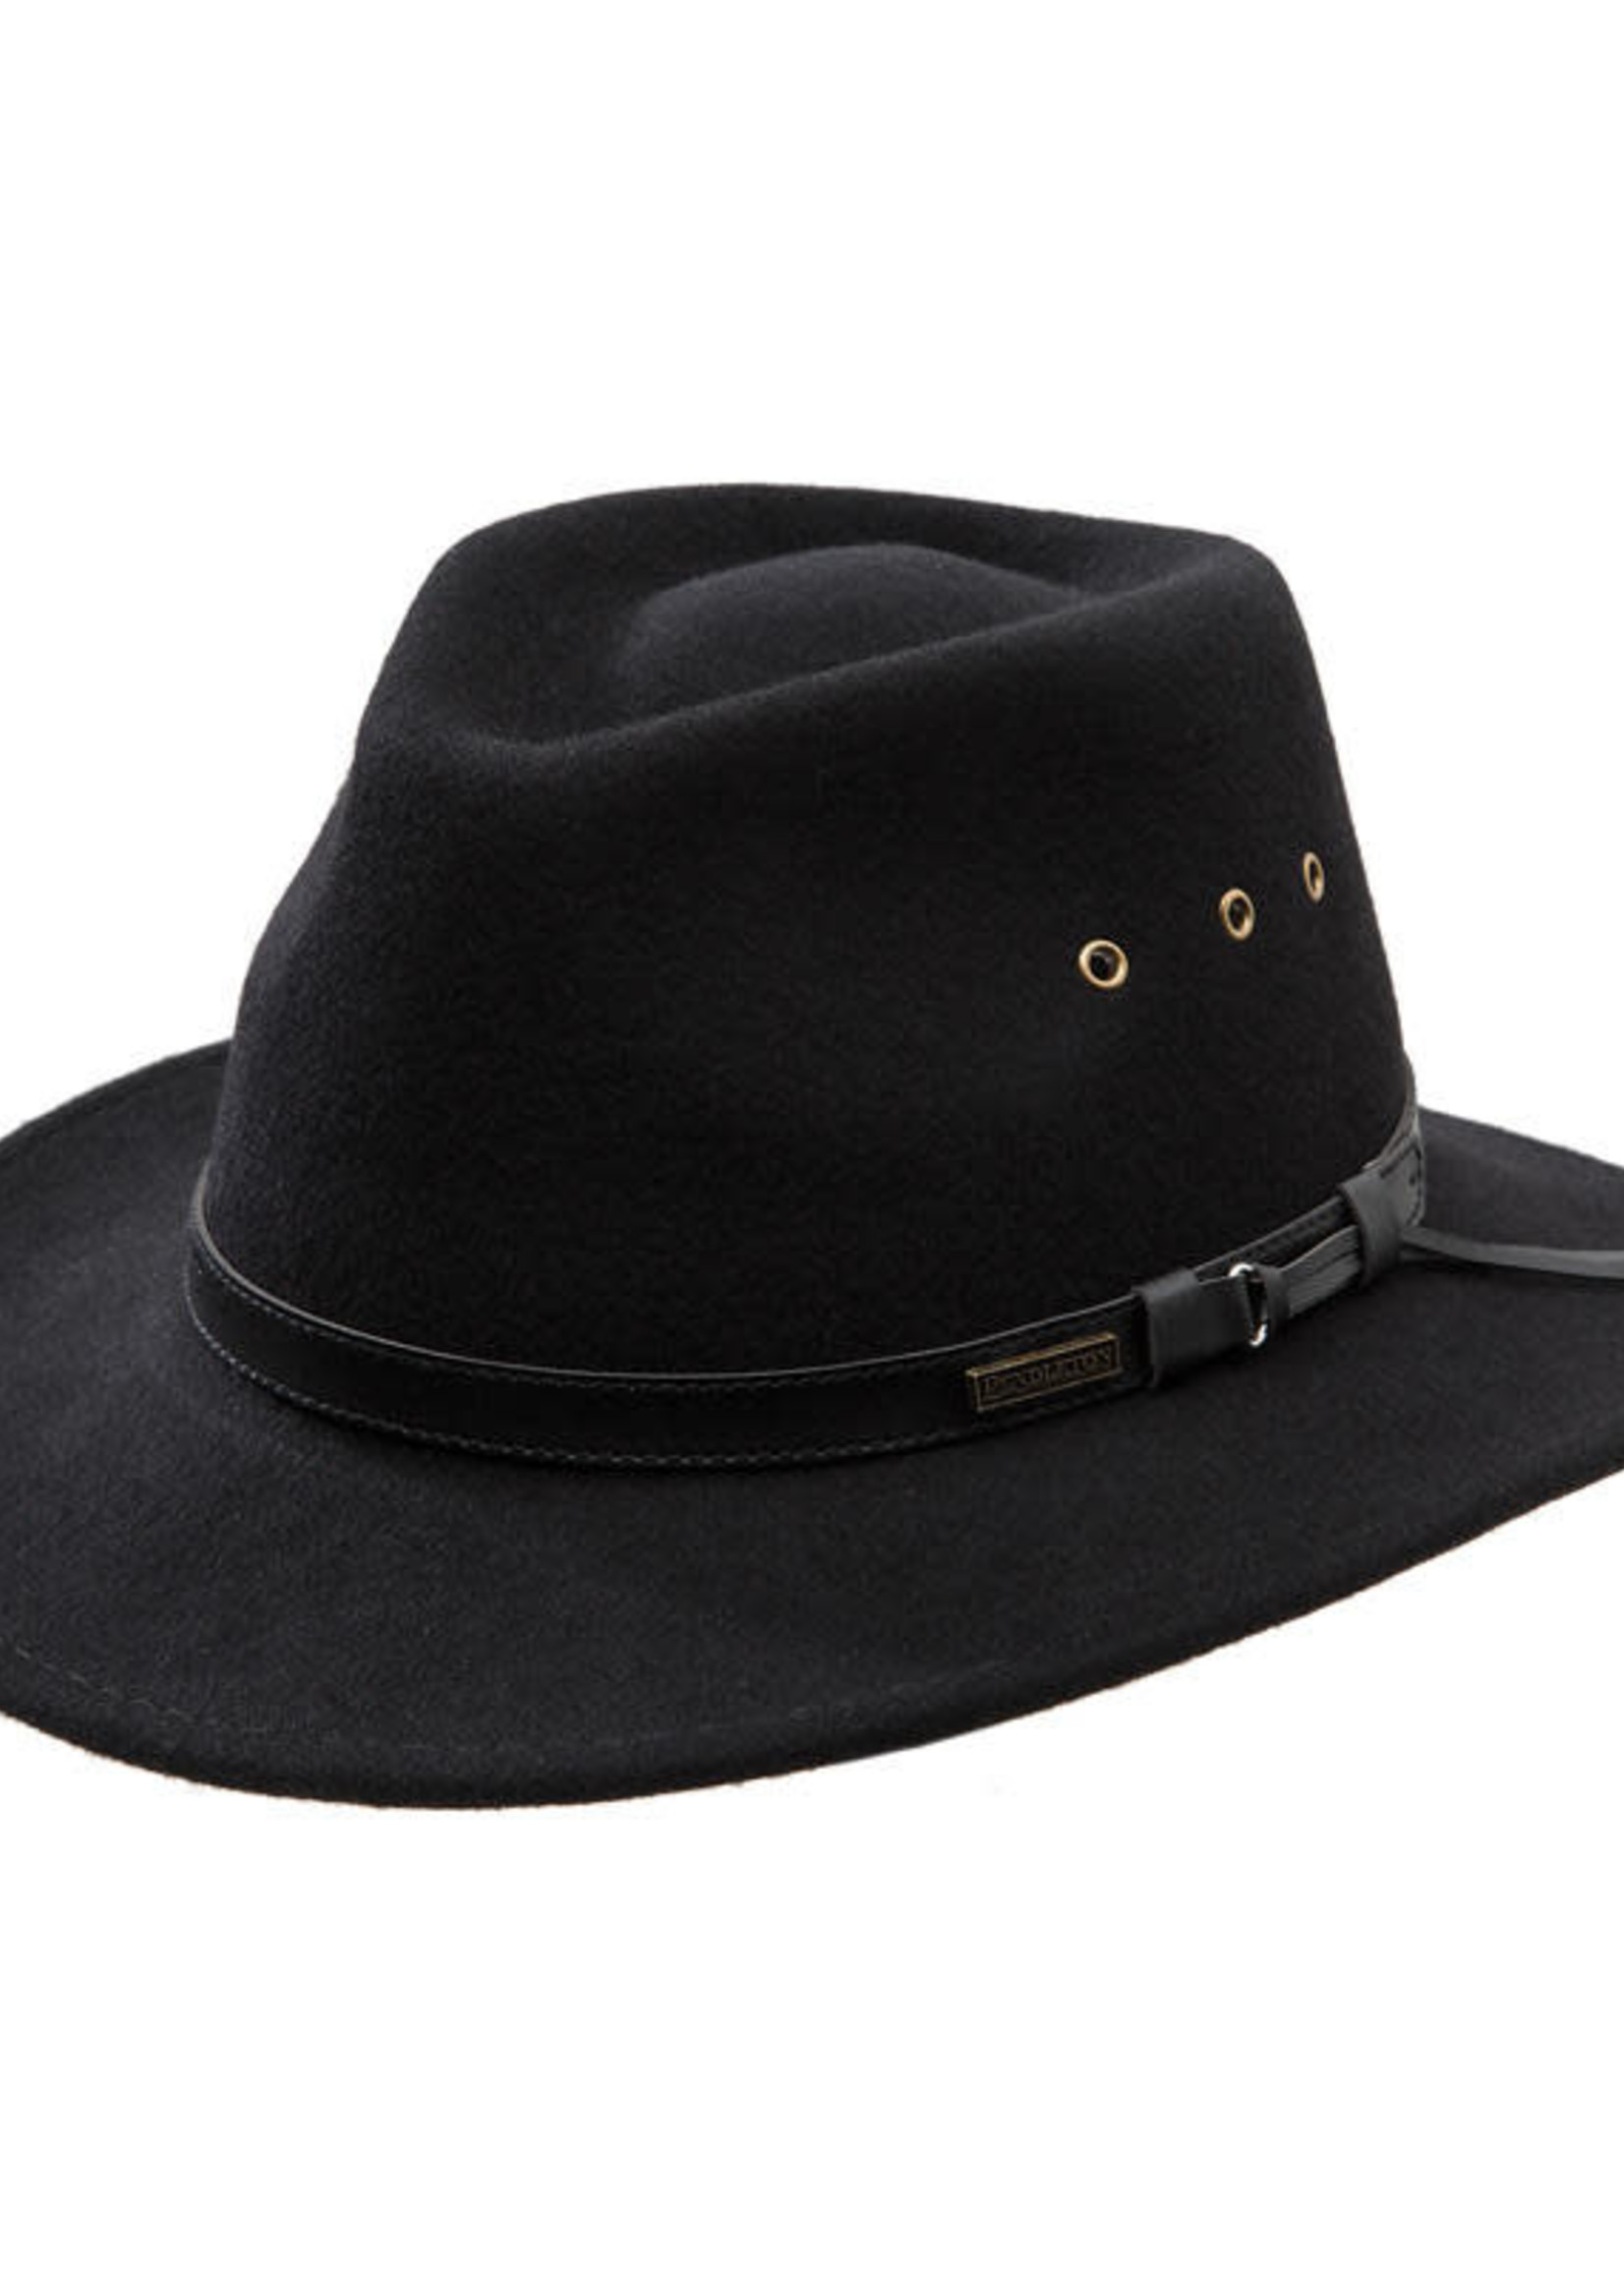 Pendleton Getaway Hat: Black